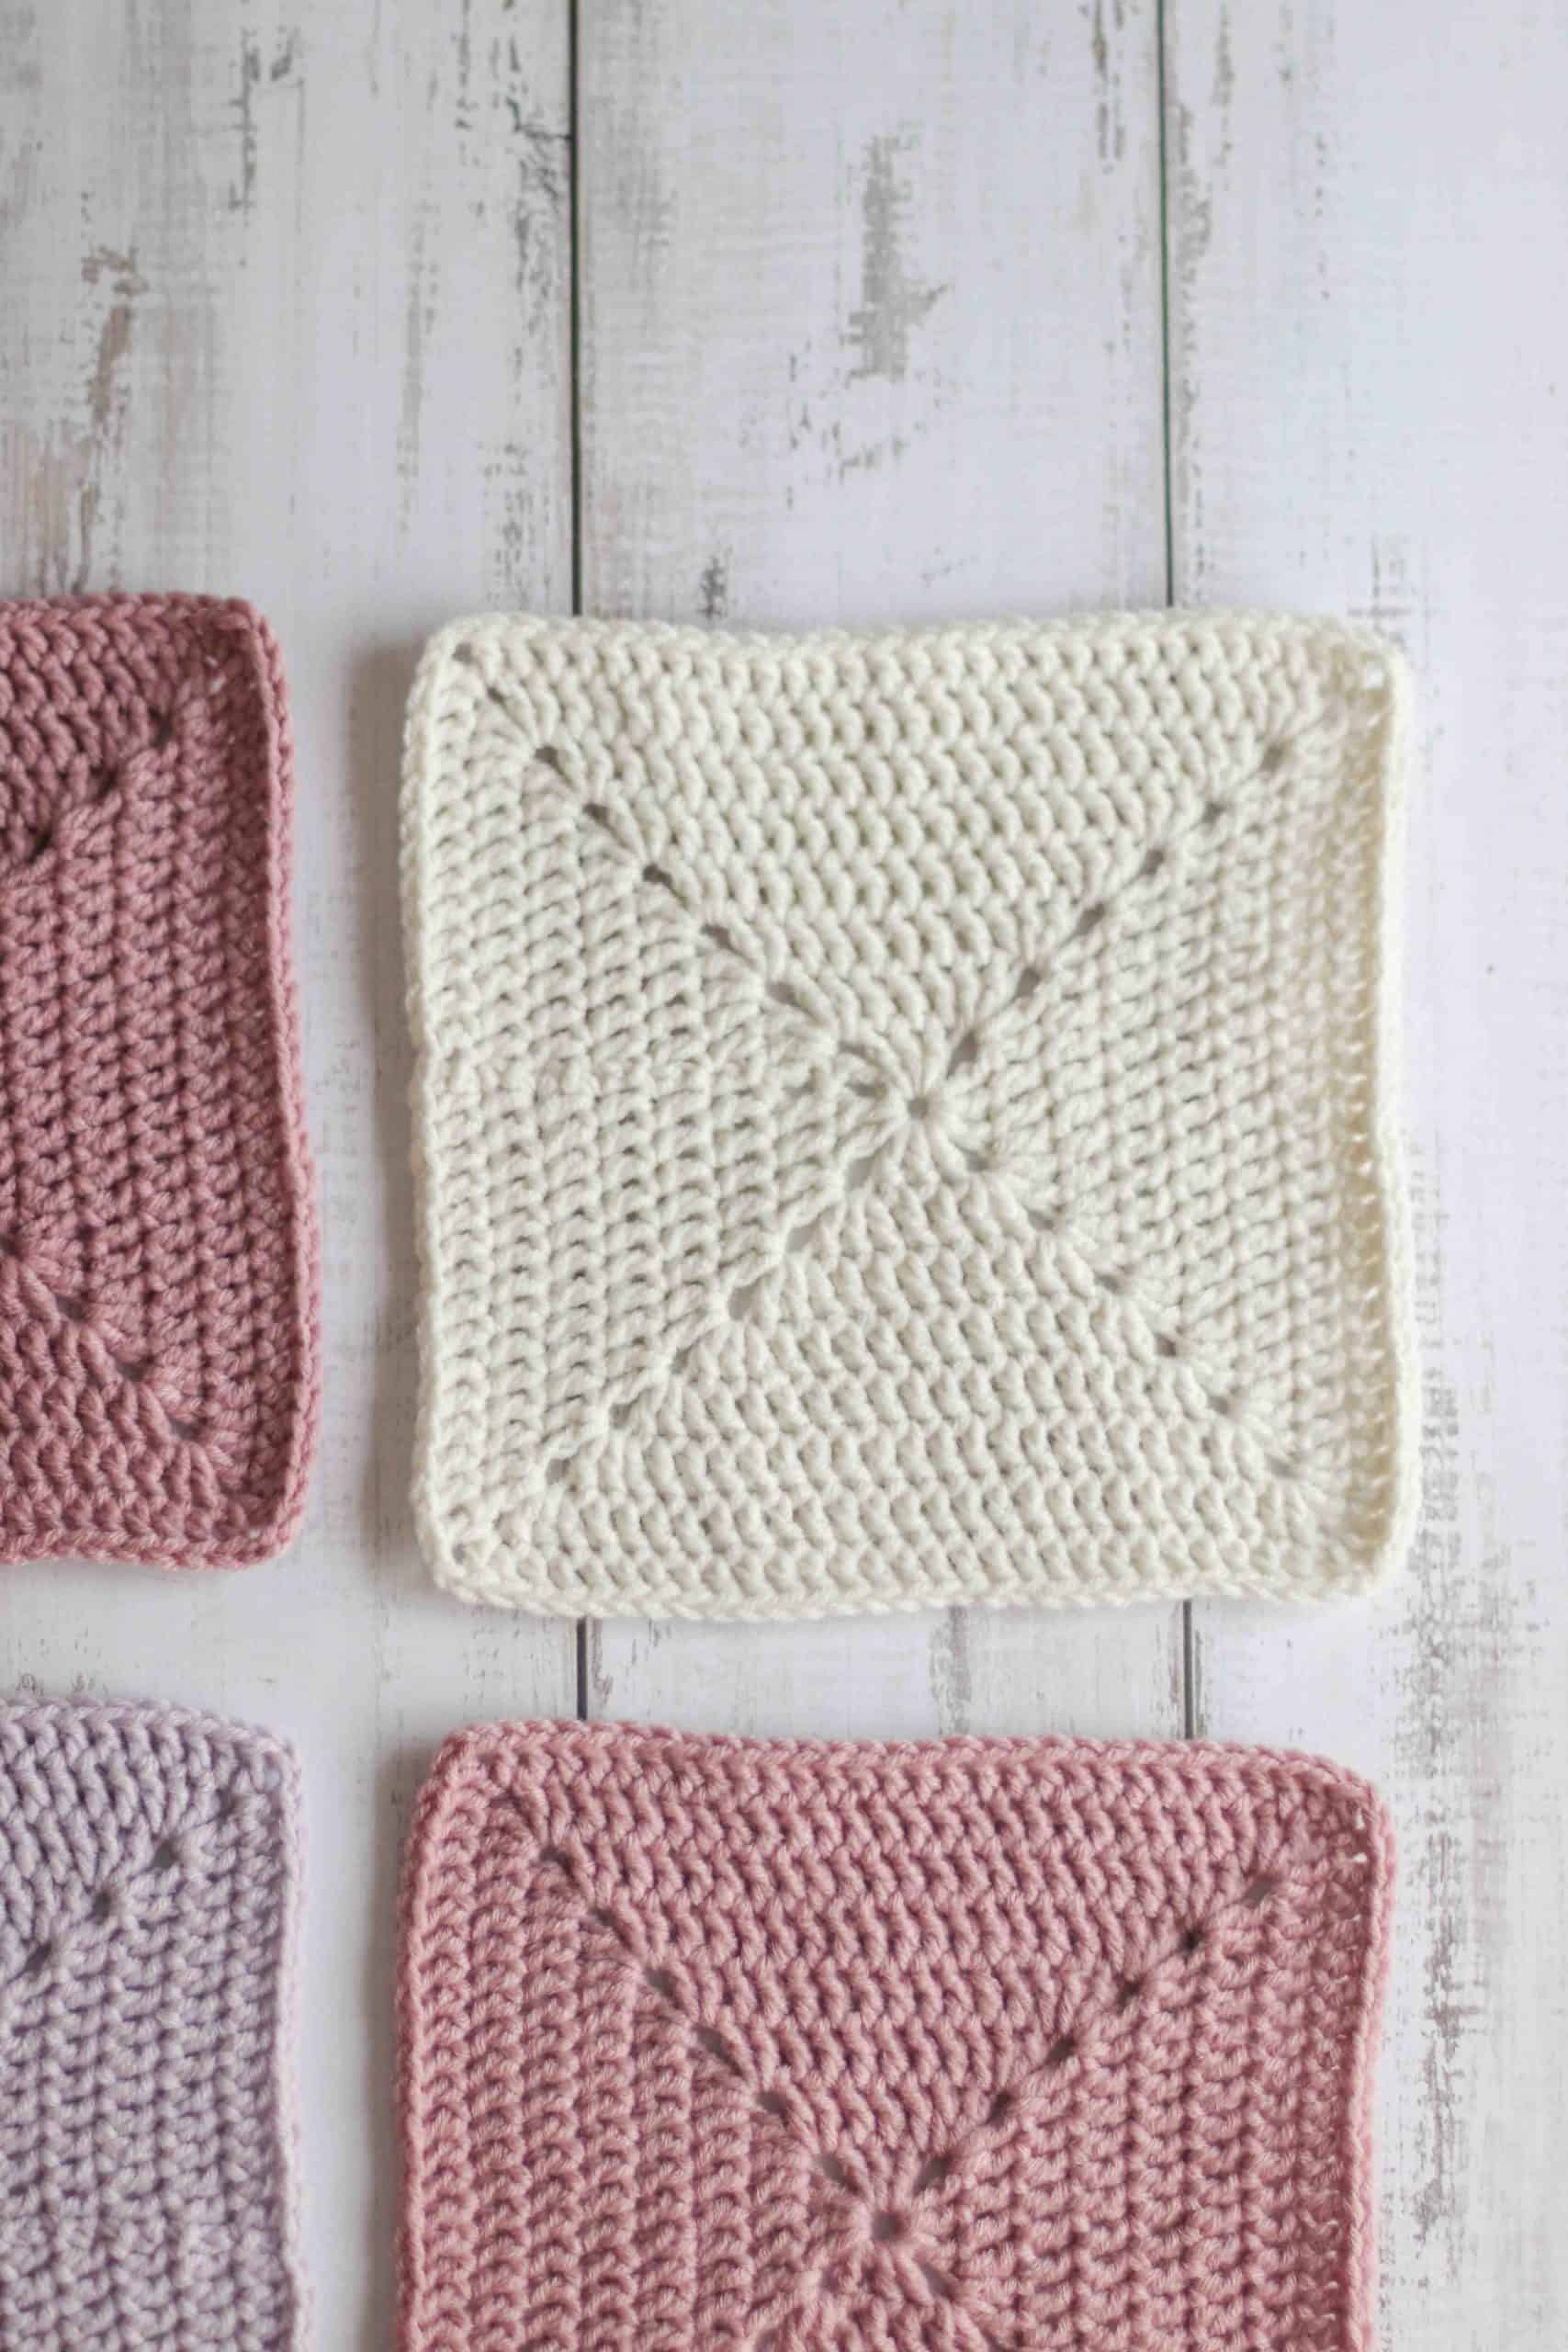 Solid crochet granny square pattern,  cream granny square surrounded by pink solid granny squares